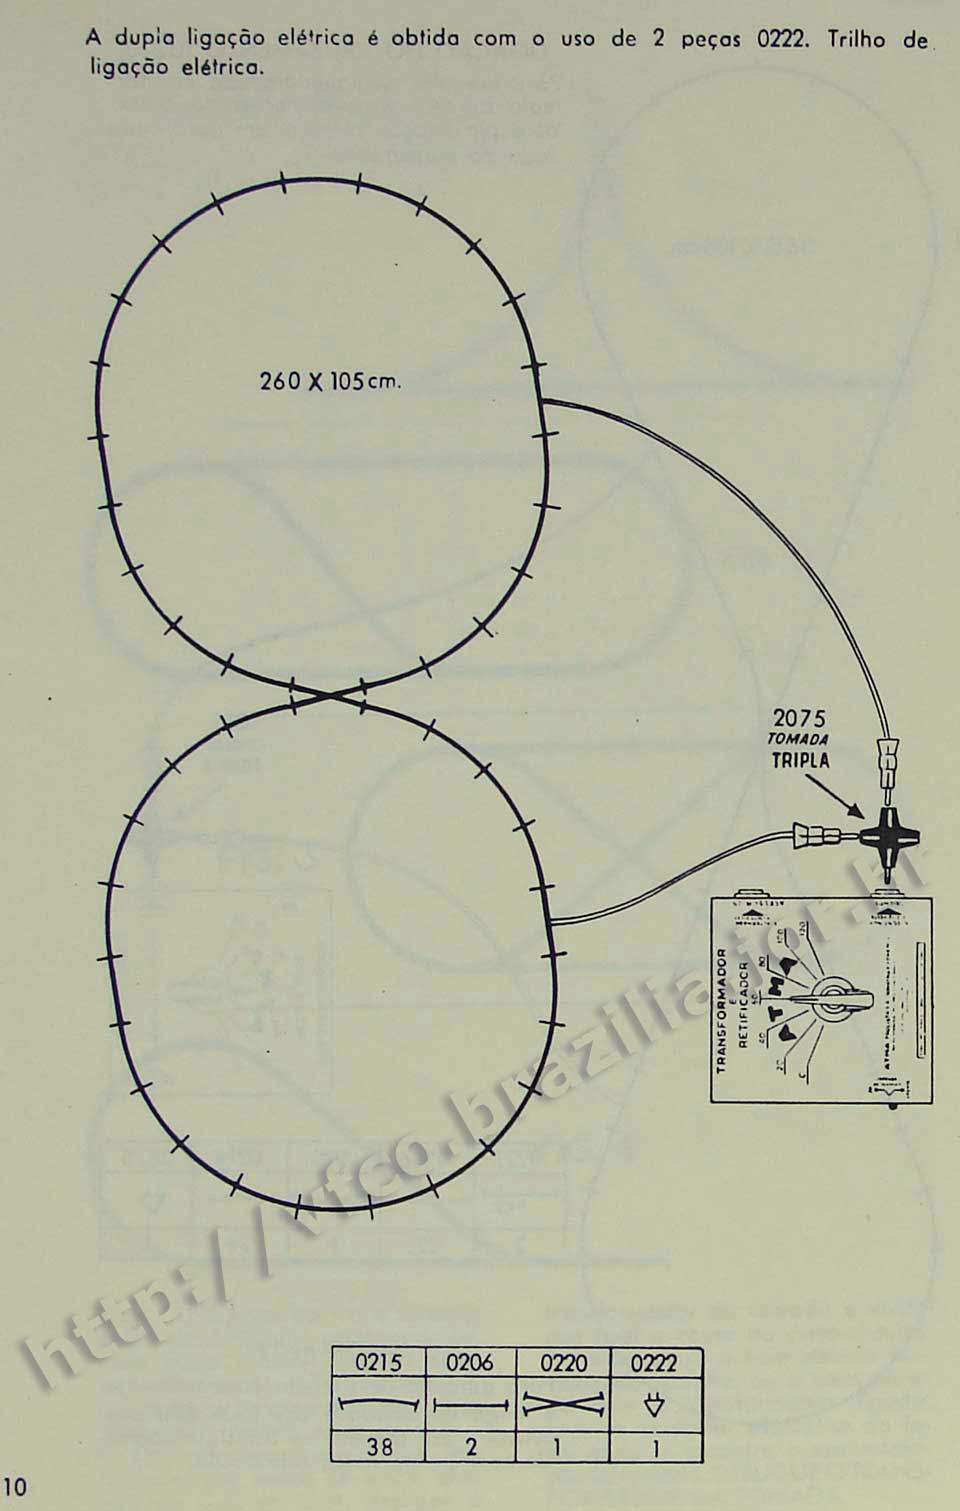 Sugestão de traçado em formato de "8" com trilho de cruzamento na Página 10 do manual "Como montar e operar seu trem elétrico Atma" para maquete de ferreomodelismo